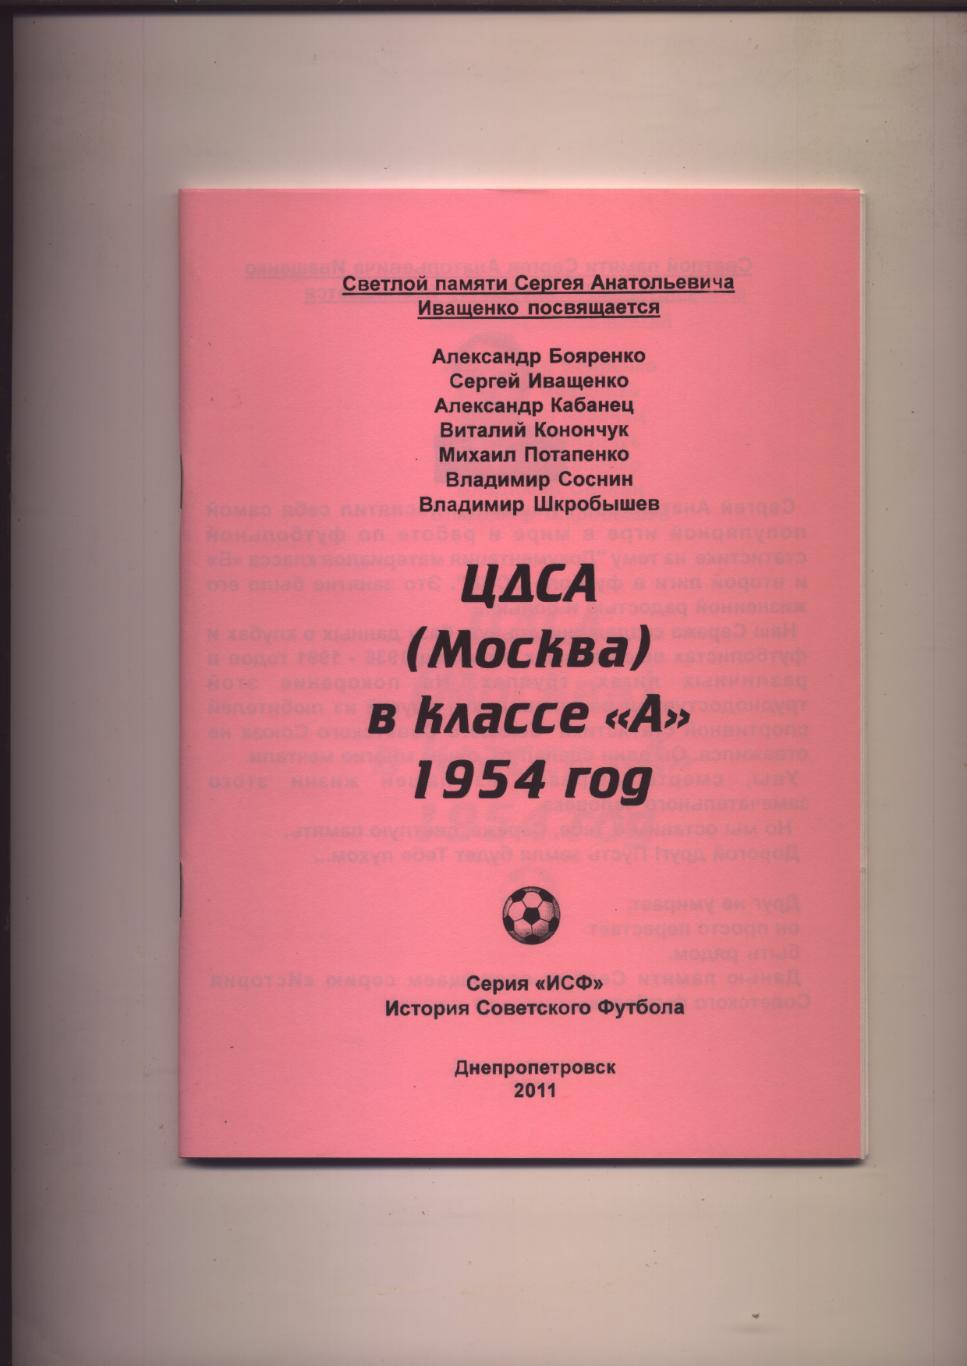 Футбол ЦДСА Москва в классе А 1954 год статистика отчёты фото 56 стр.